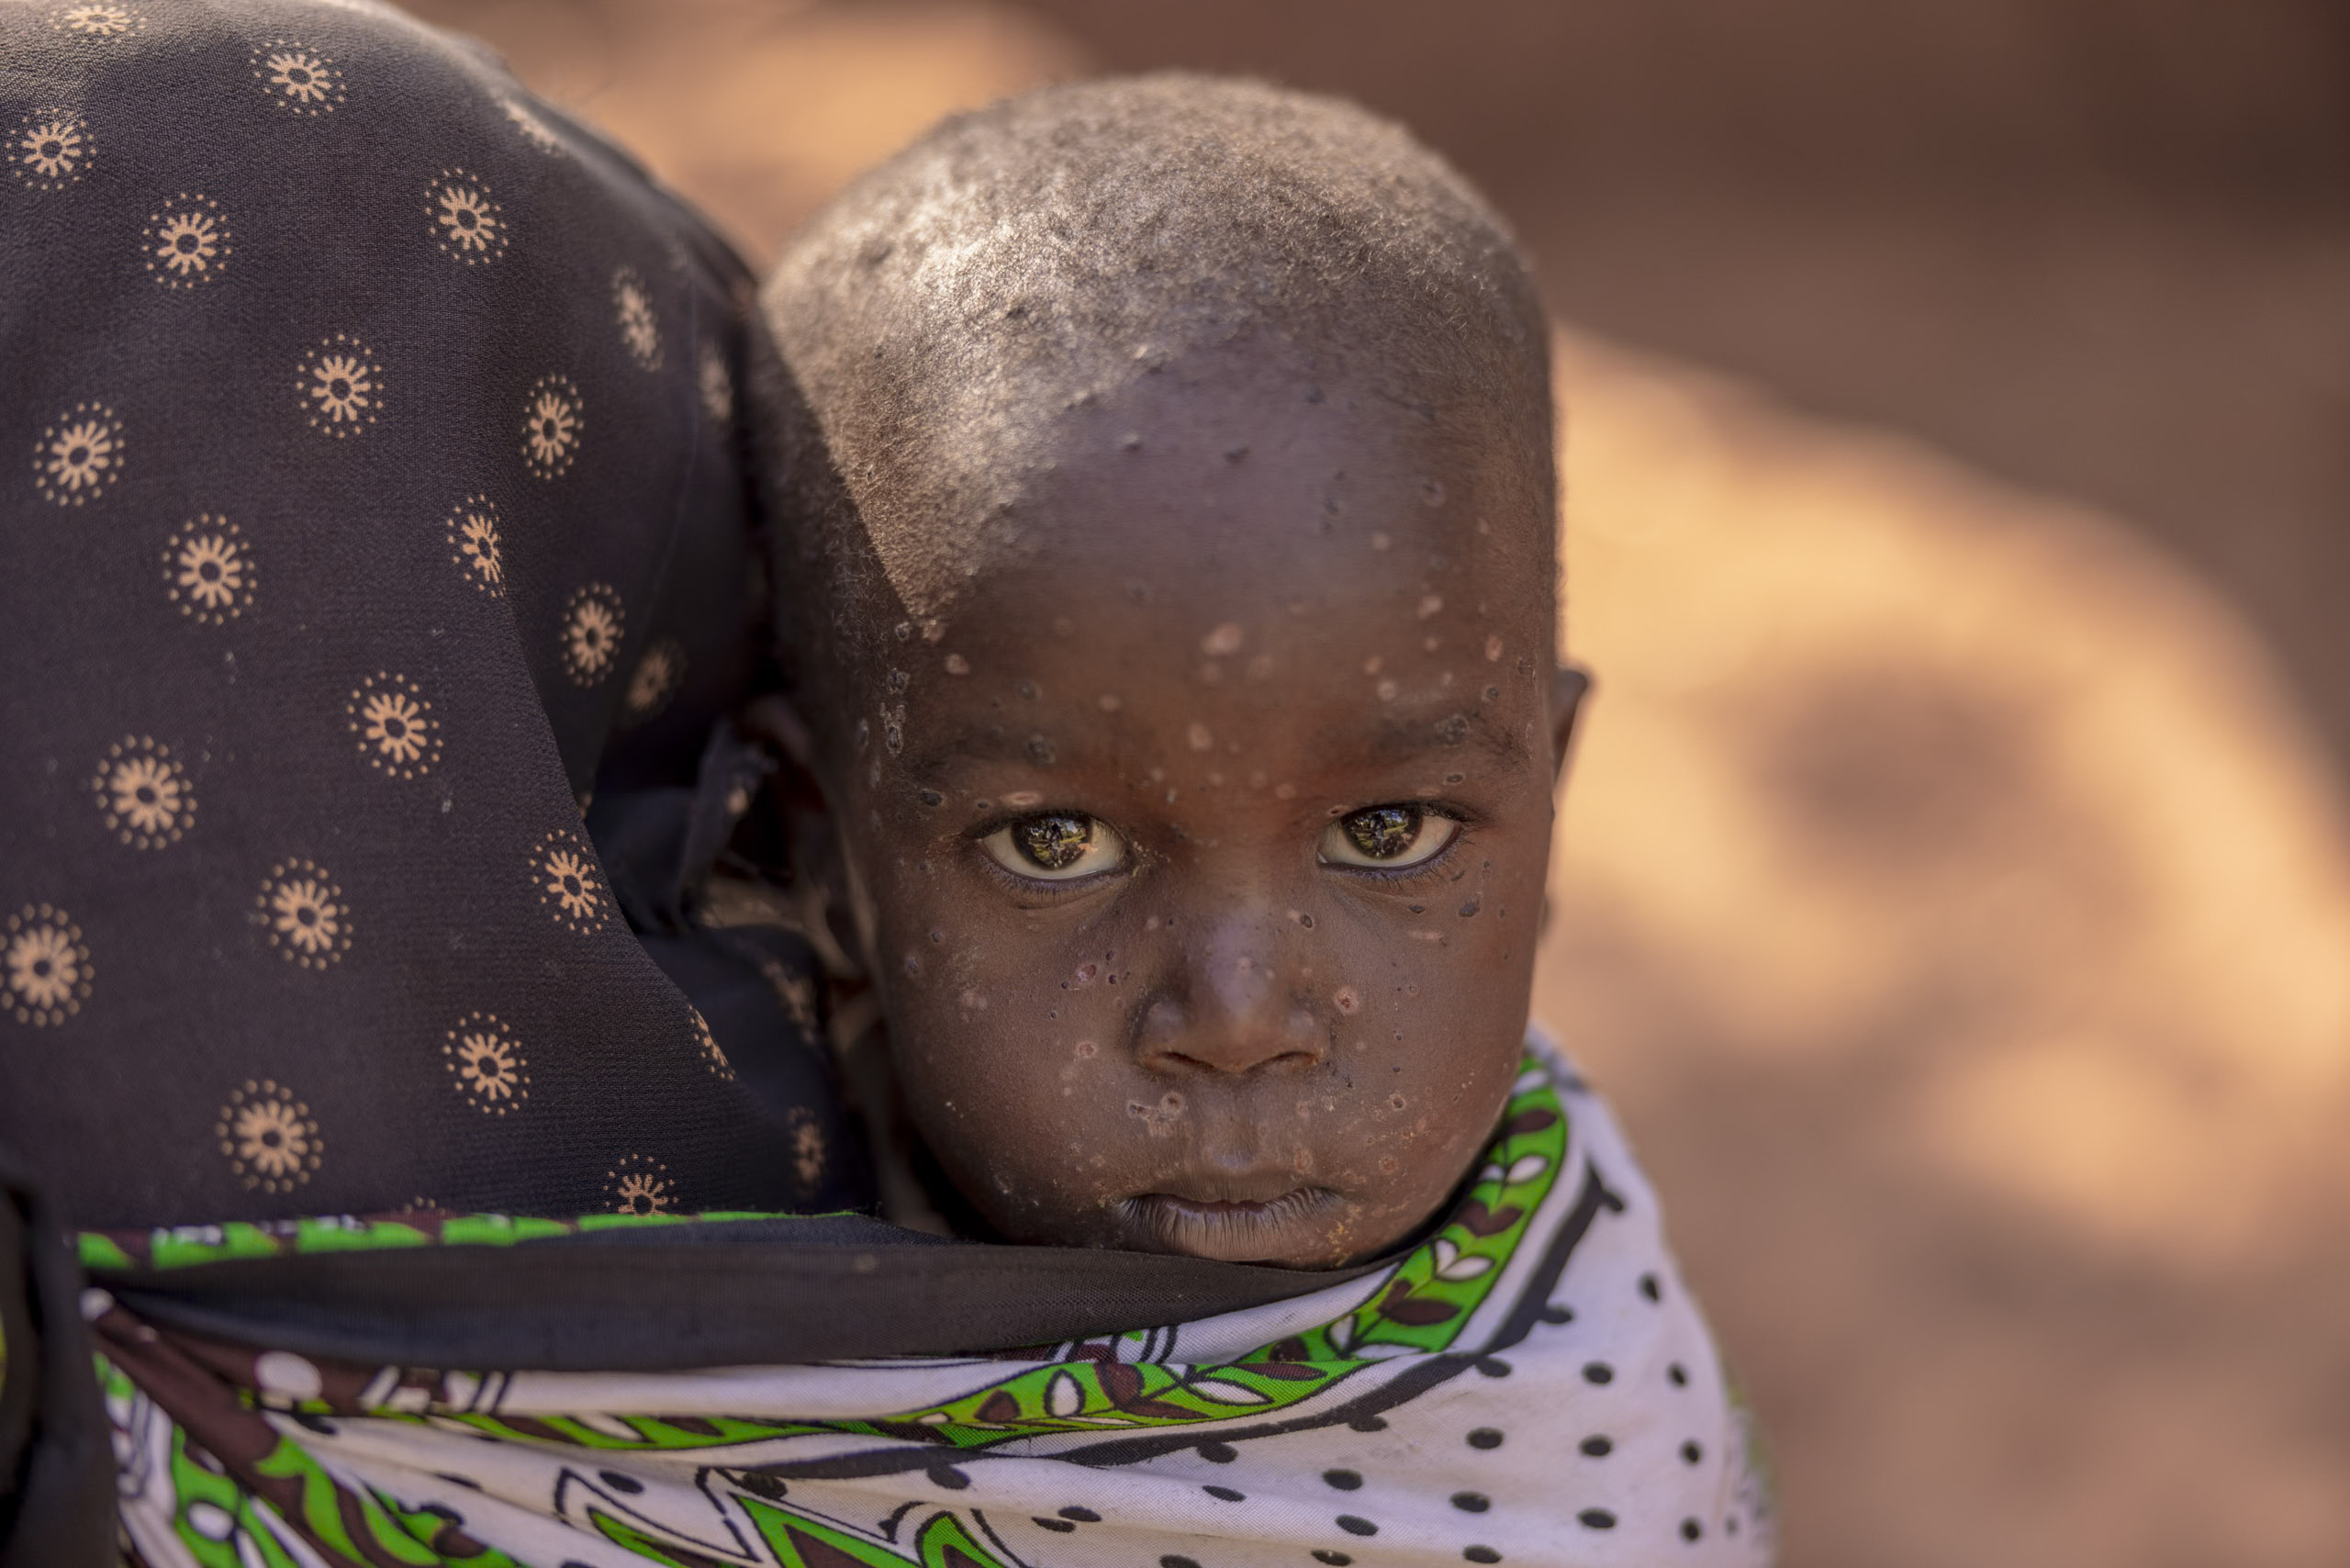 Ein kleines Kind mit auffälligen Augen blickt in einer natürlichen Umgebung im Freien über eine gemusterte Stofftrage, die ein Erwachsener auf dem Rücken trägt. Das Gesicht des Kindes ist mit leichtem Staub bedeckt. © Fotografie Tomas Rodriguez